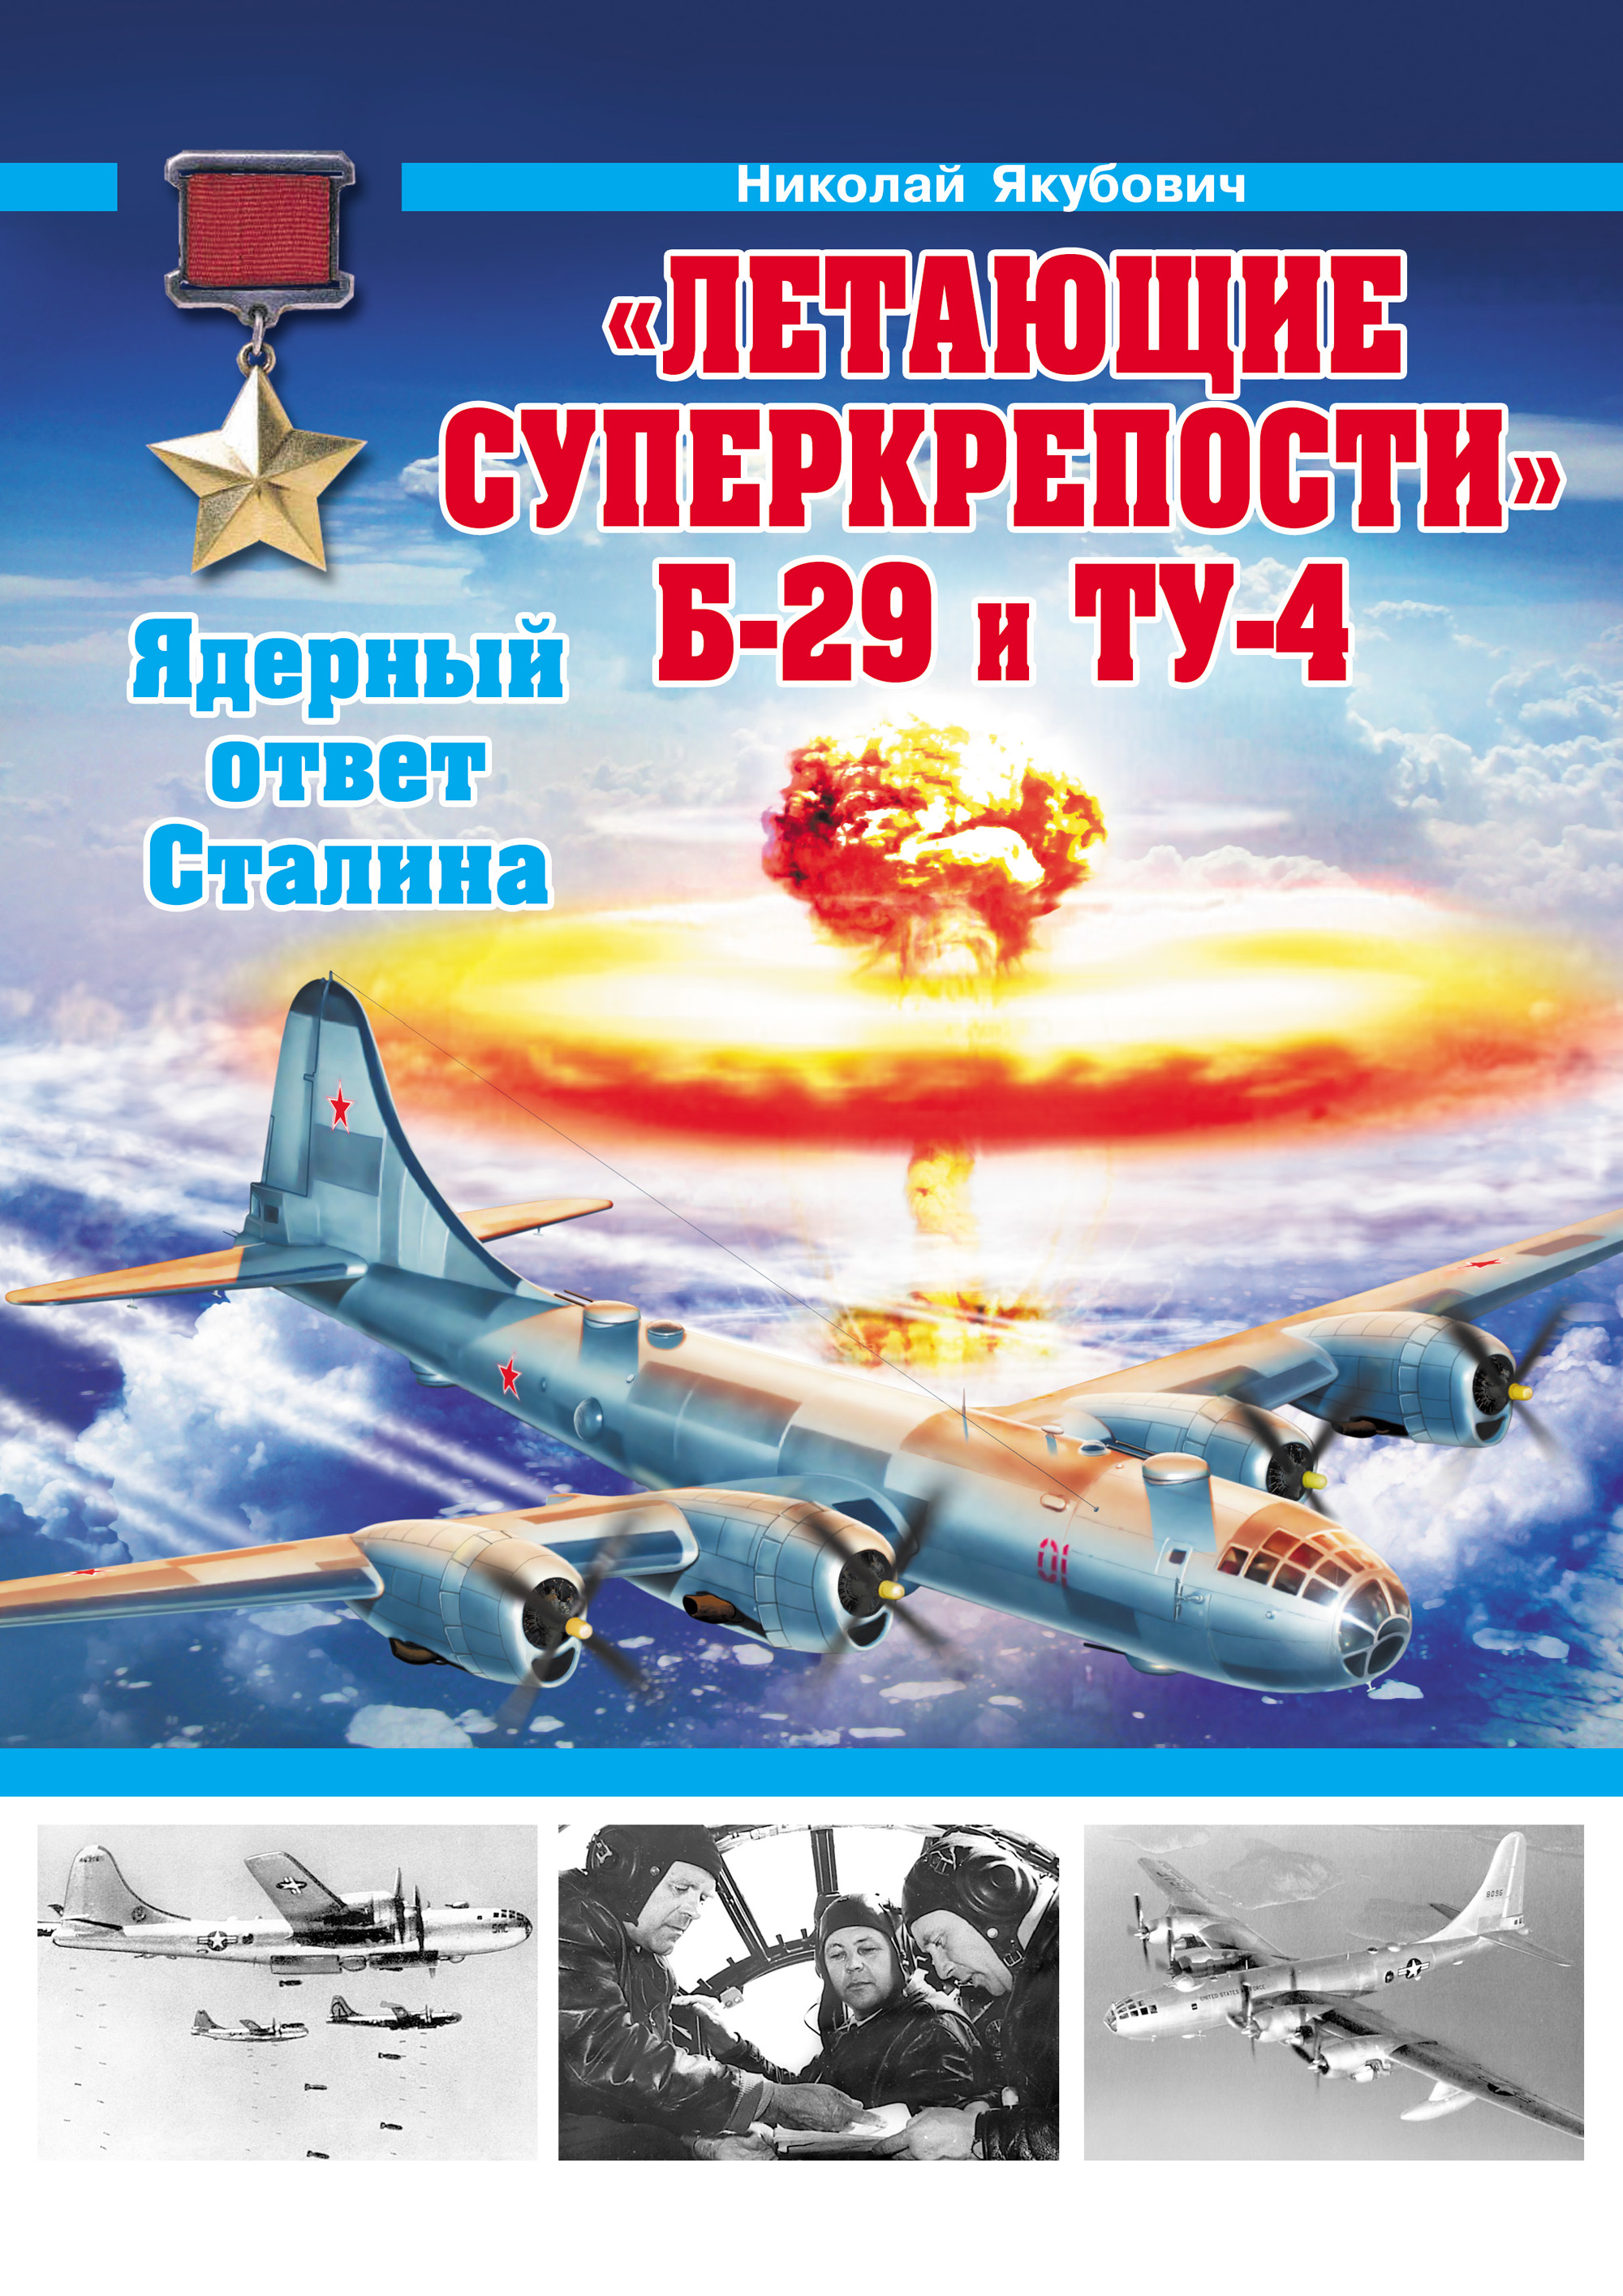 «Летающие суперкрепости» Б-29 и Ту-4. Ядерный ответ Сталина